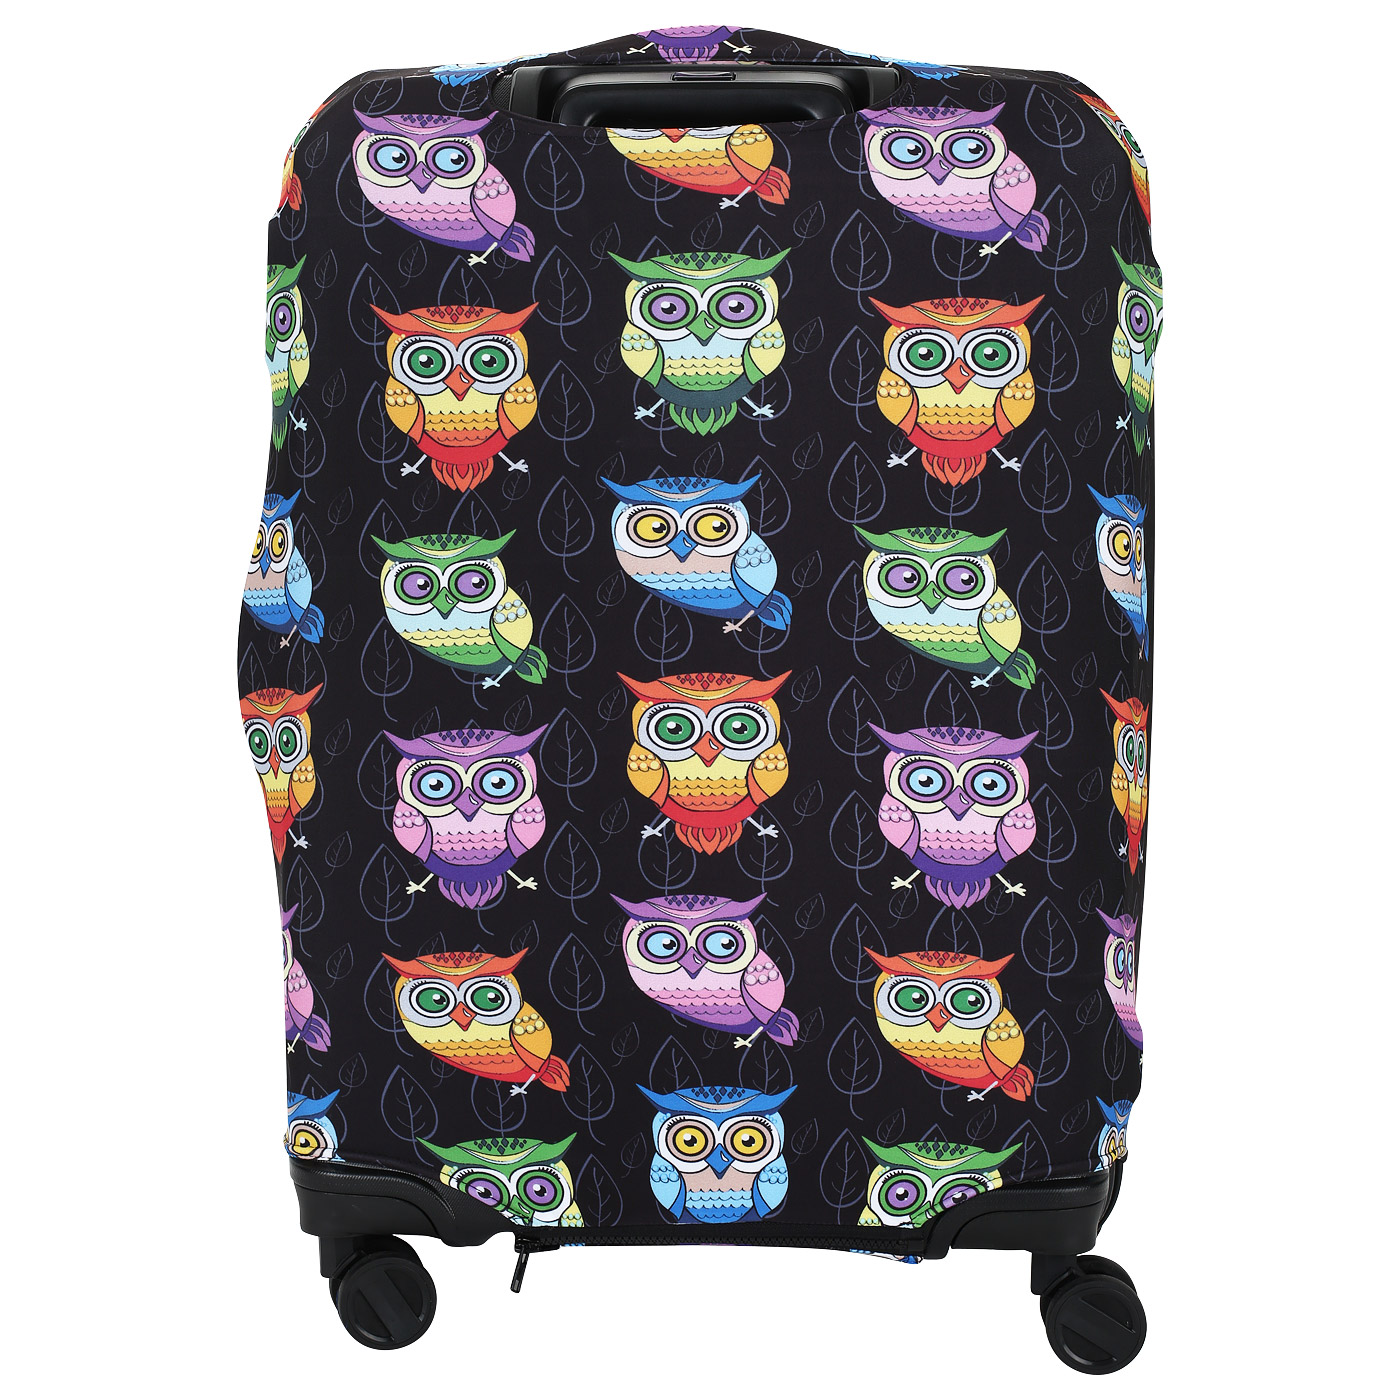 Влагостойкий чехол для большого чемодана Chatte Night Owls